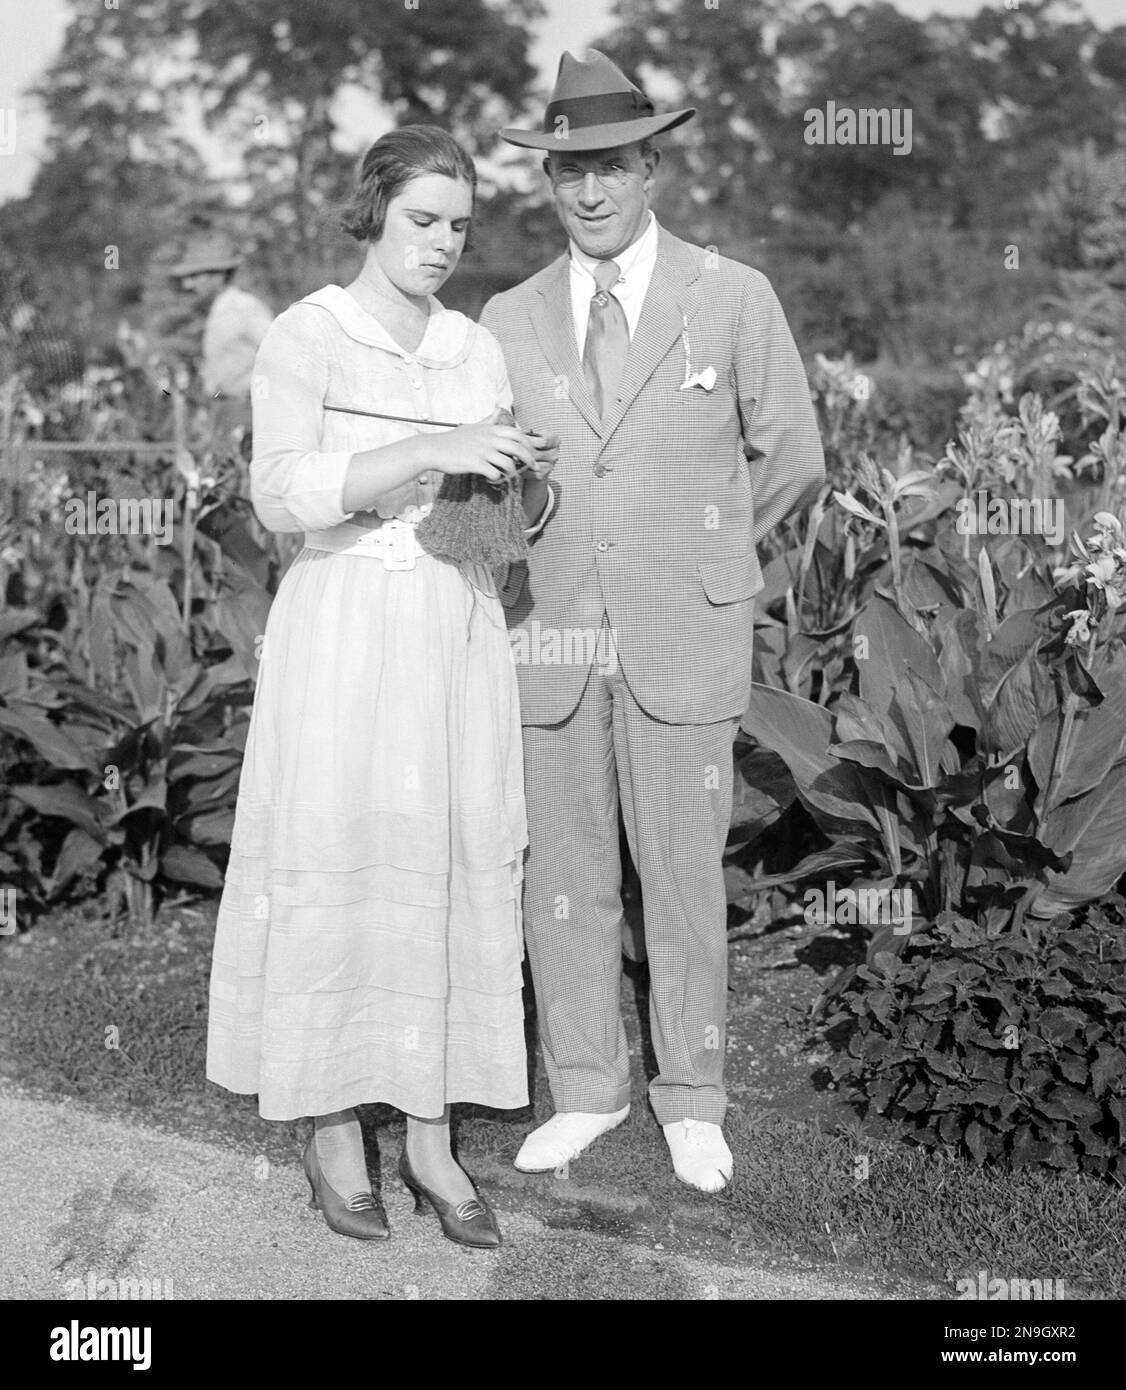 James Stuart Blackton (1875-1941), britisch-amerikanischer Filmproduzent und Regisseur der Stummzeit mit seiner Tochter Marian Blackton Trimble (1901-1993), Stockfoto